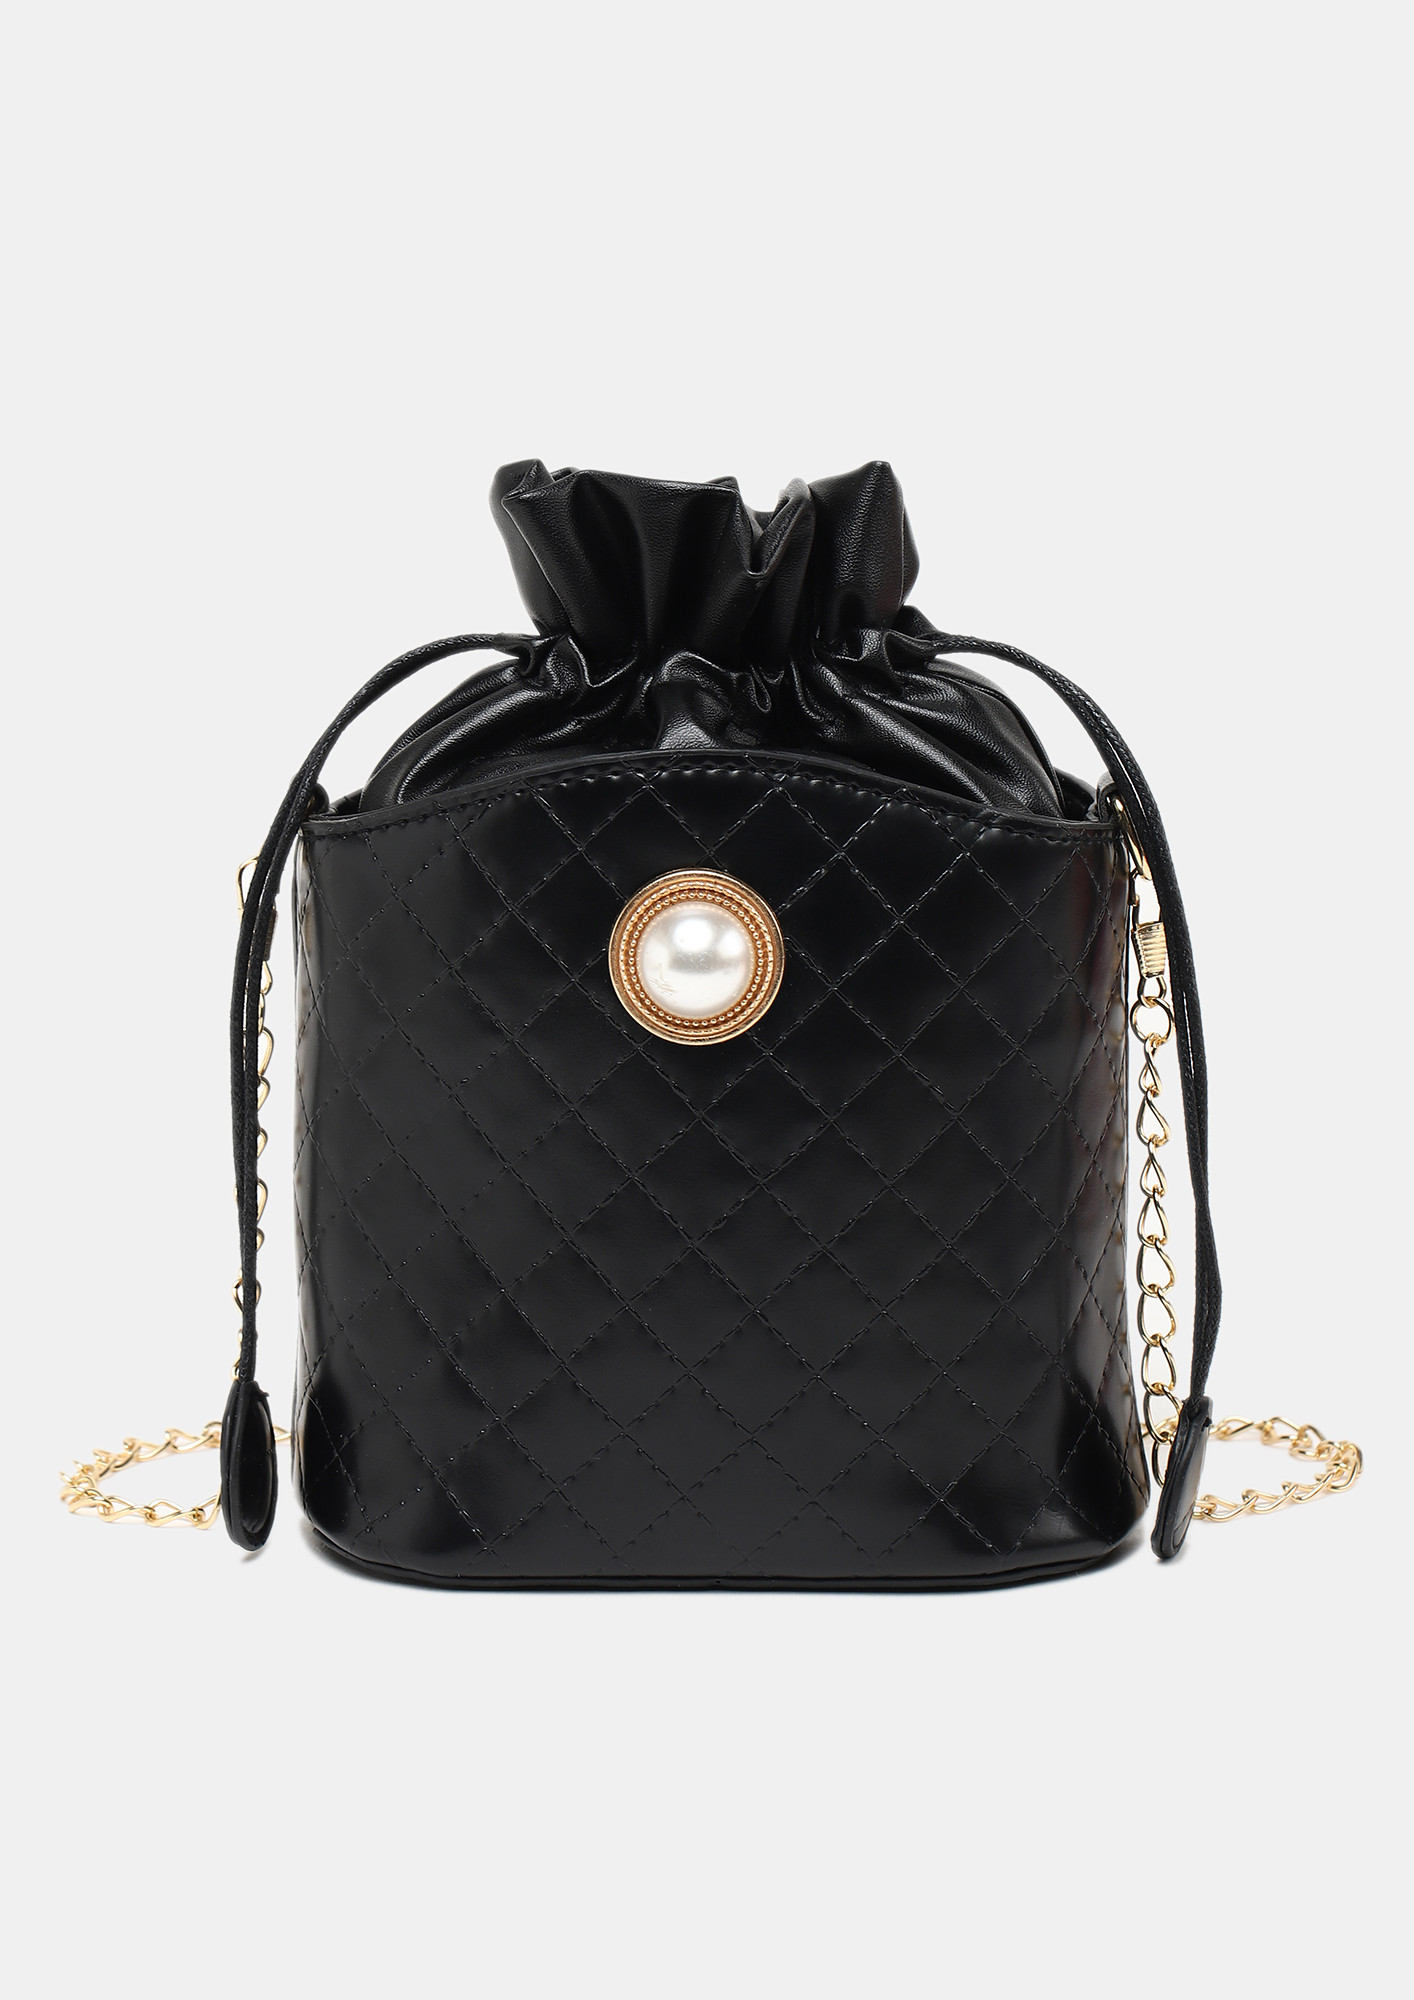 Chanel Black Bucket Bags for Women